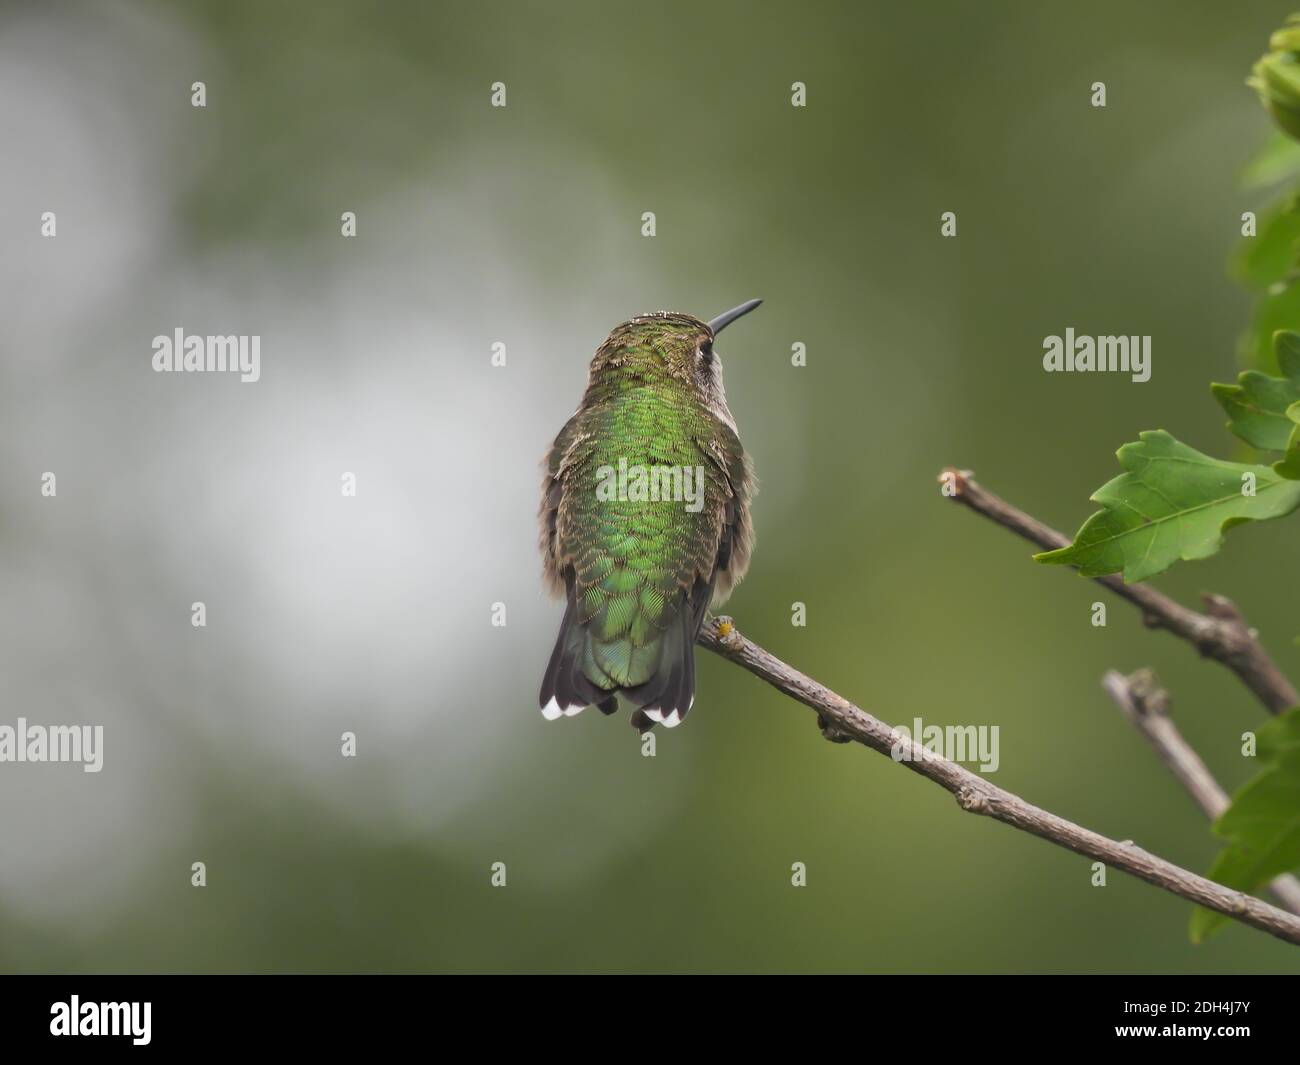 Rubinkehliger Kolibri in leichter Profilansicht mit geradem schmalen Schnabel Und Eye Showing zusammen mit unglaublich schillernden grünen Federn auf Zurück Stockfoto